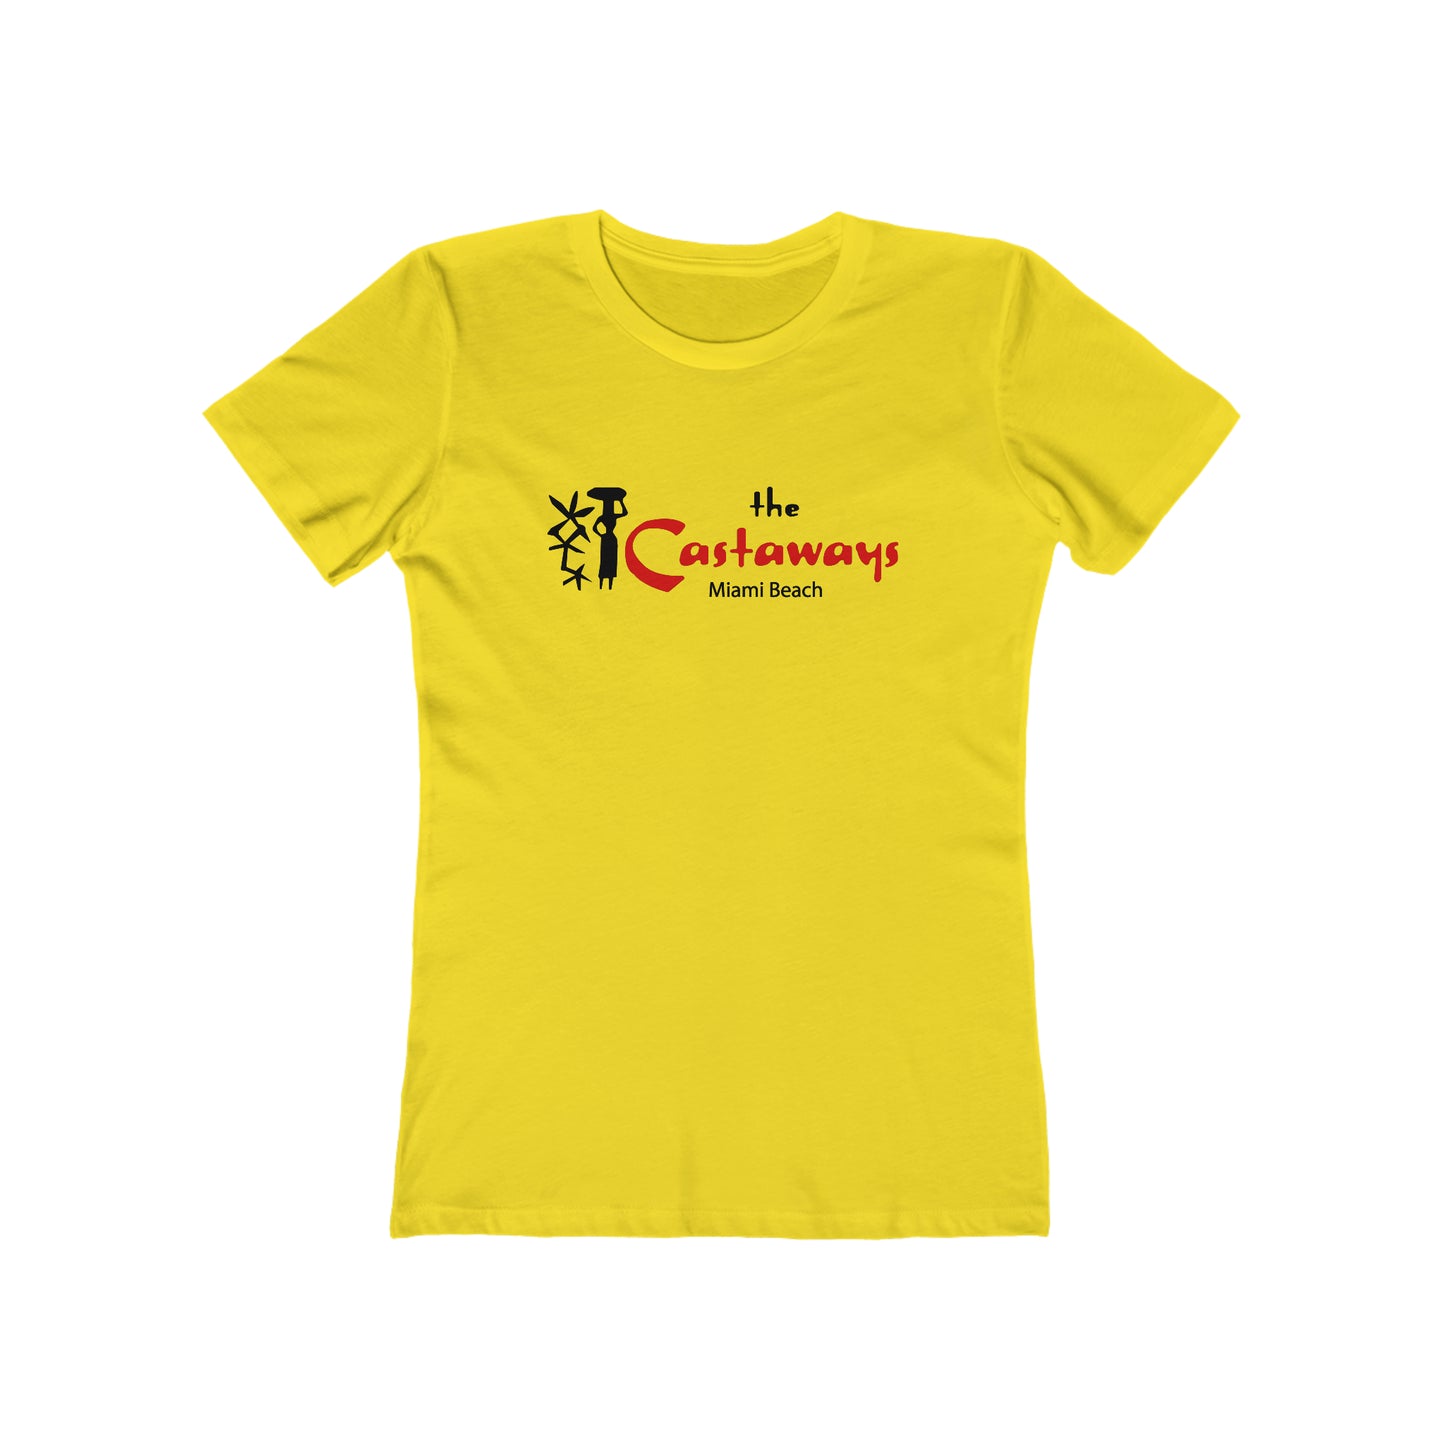 The Castaways - Women's T-Shirt